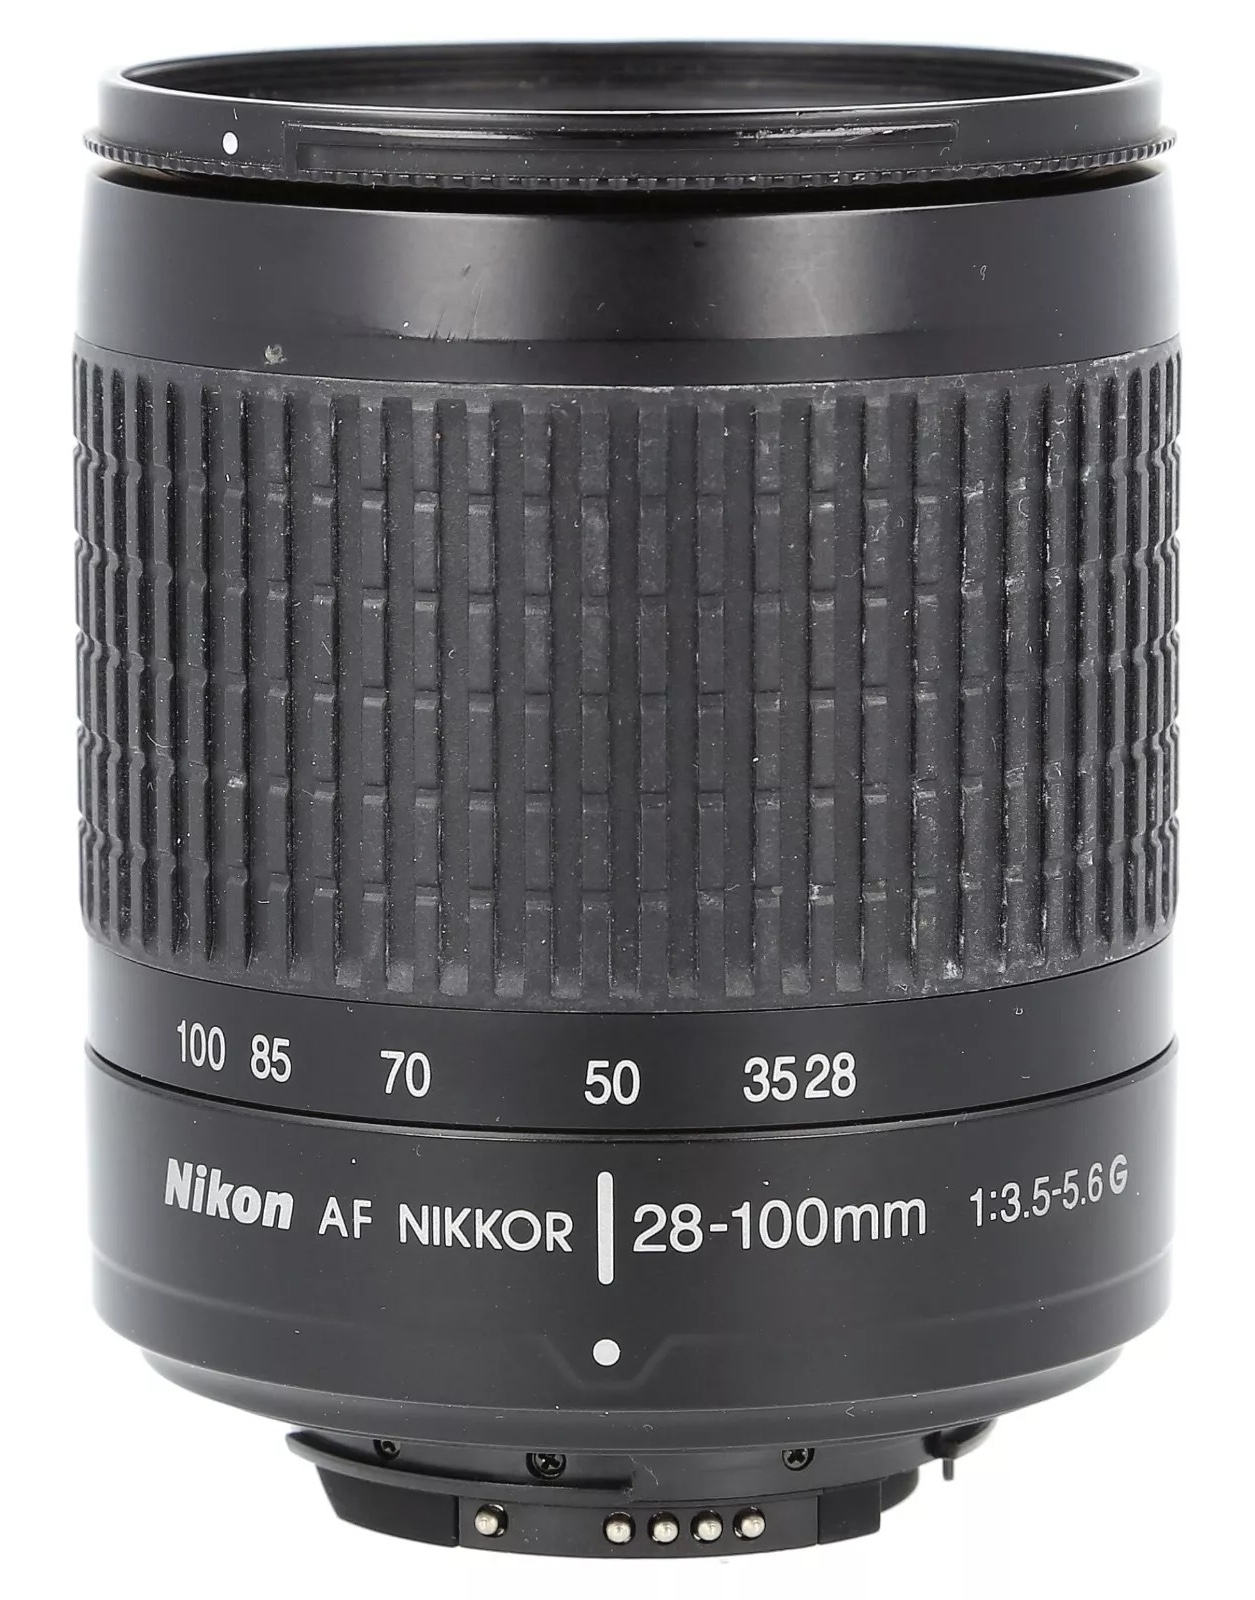 Nikon AF Nikkor 28-100mm F/3.5-5.6G | LENS-DB.COM